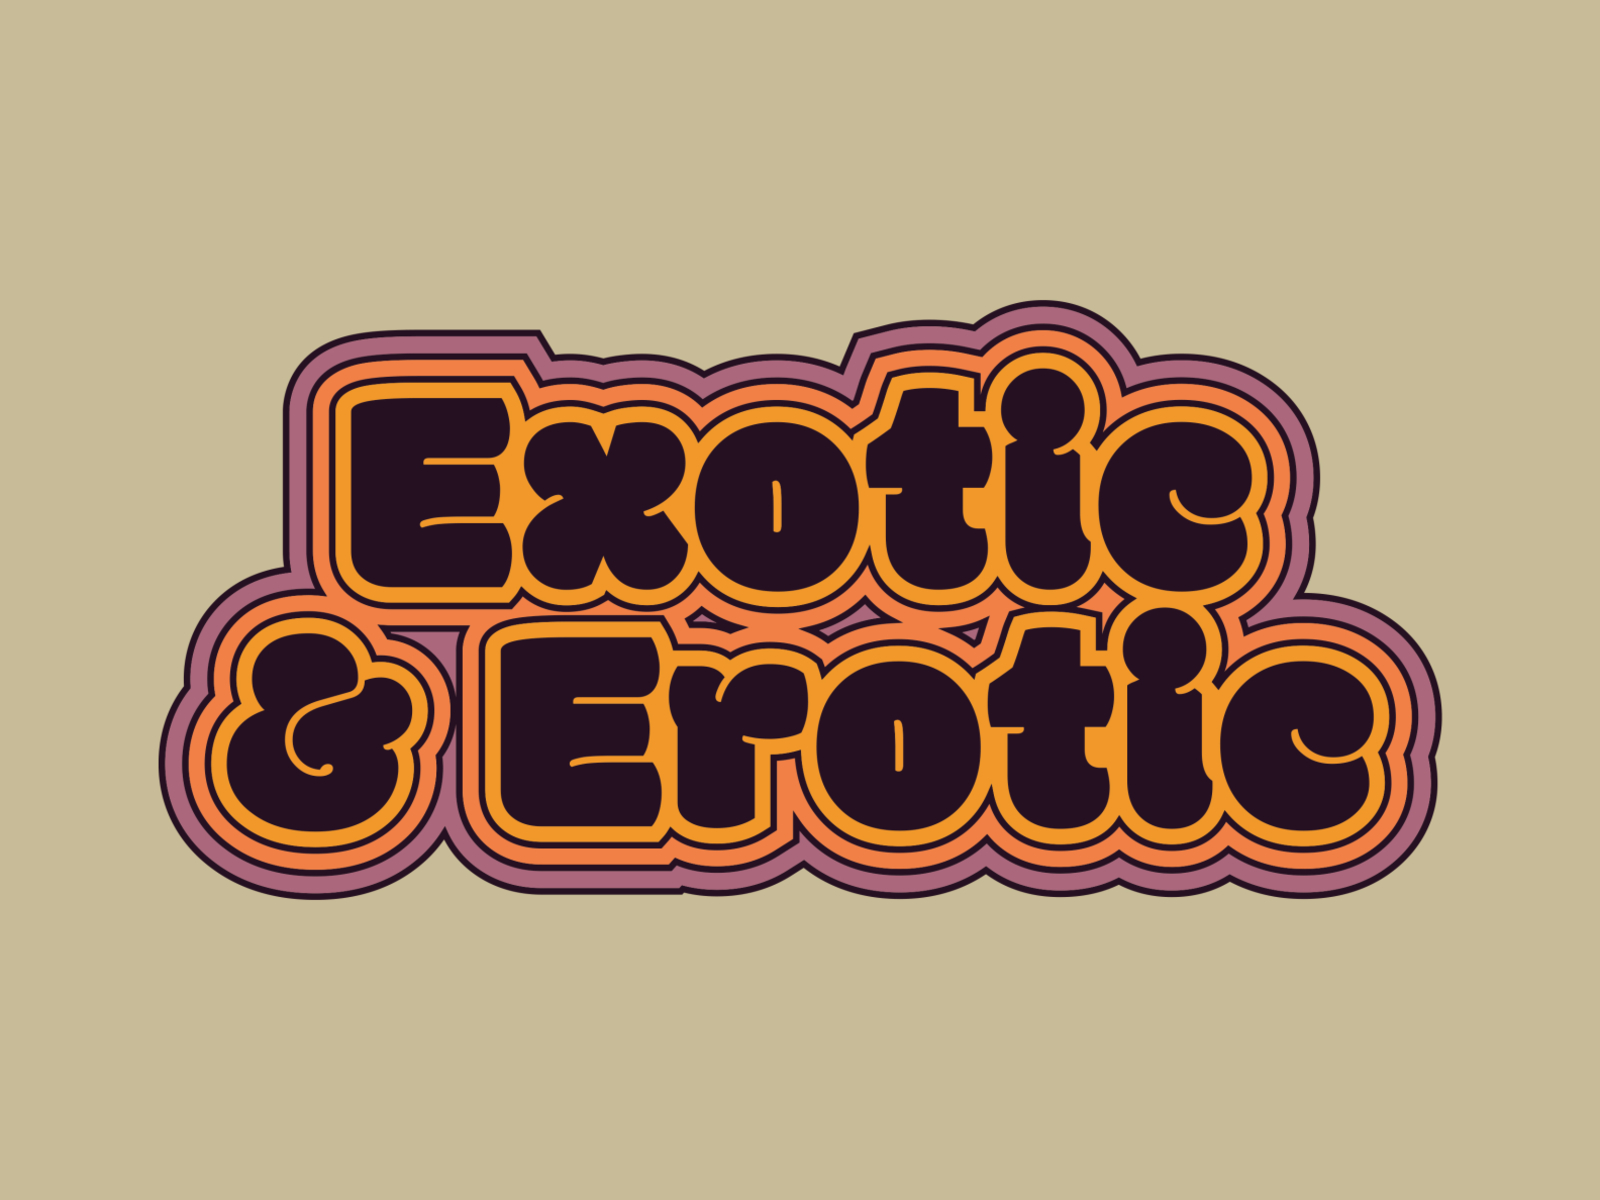 Exotic & Erotic design typography graphic design